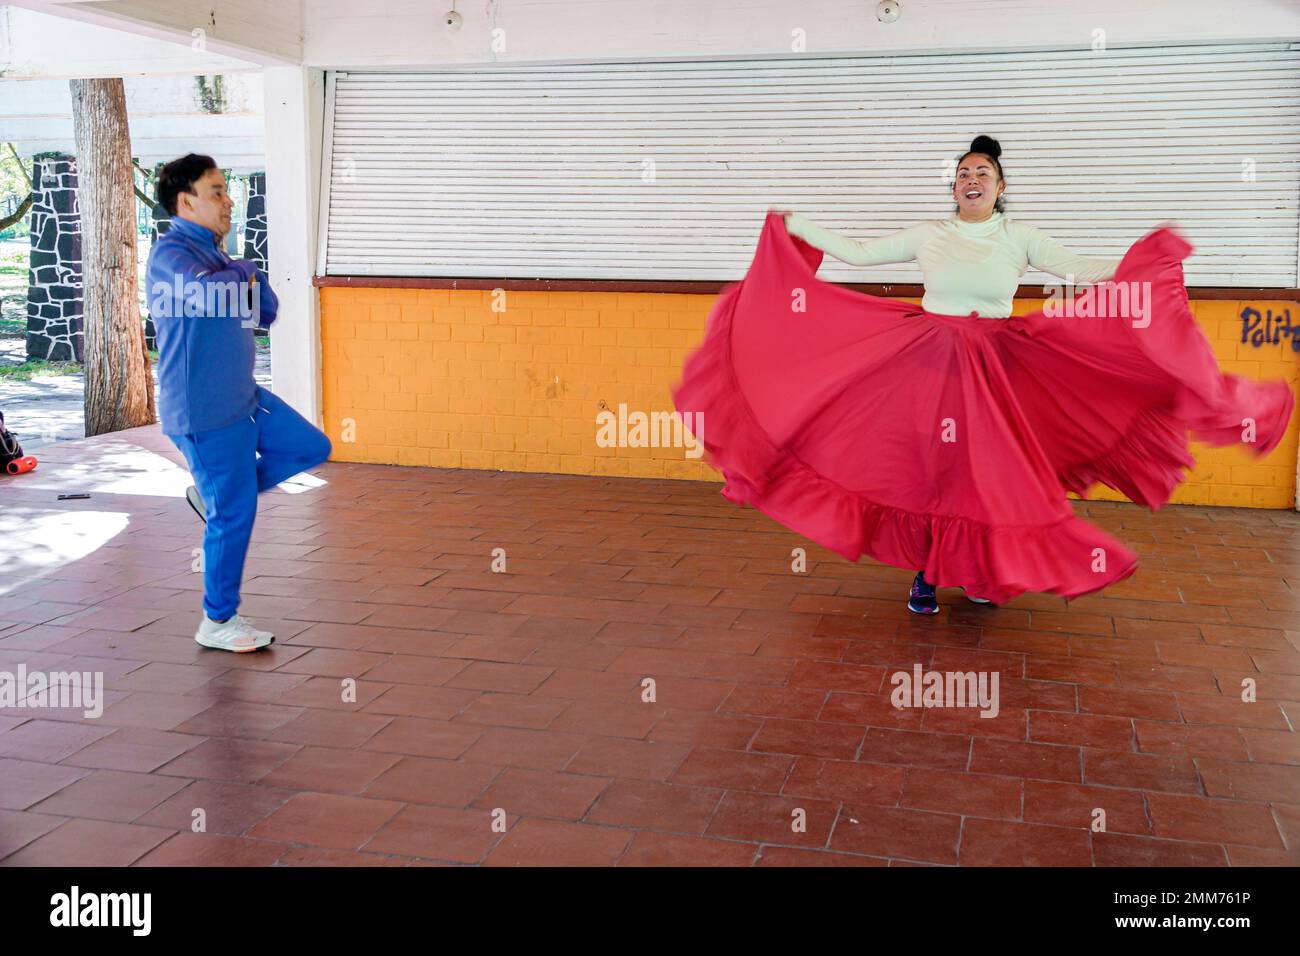 Città del Messico,Bosque de Chapultepec Sezione 2 Foresta,flamenco lezioni insegnante allenatore studente danza pratica,uomo uomini maschio,donna donna donna donna donna donna femmina,adul Foto Stock